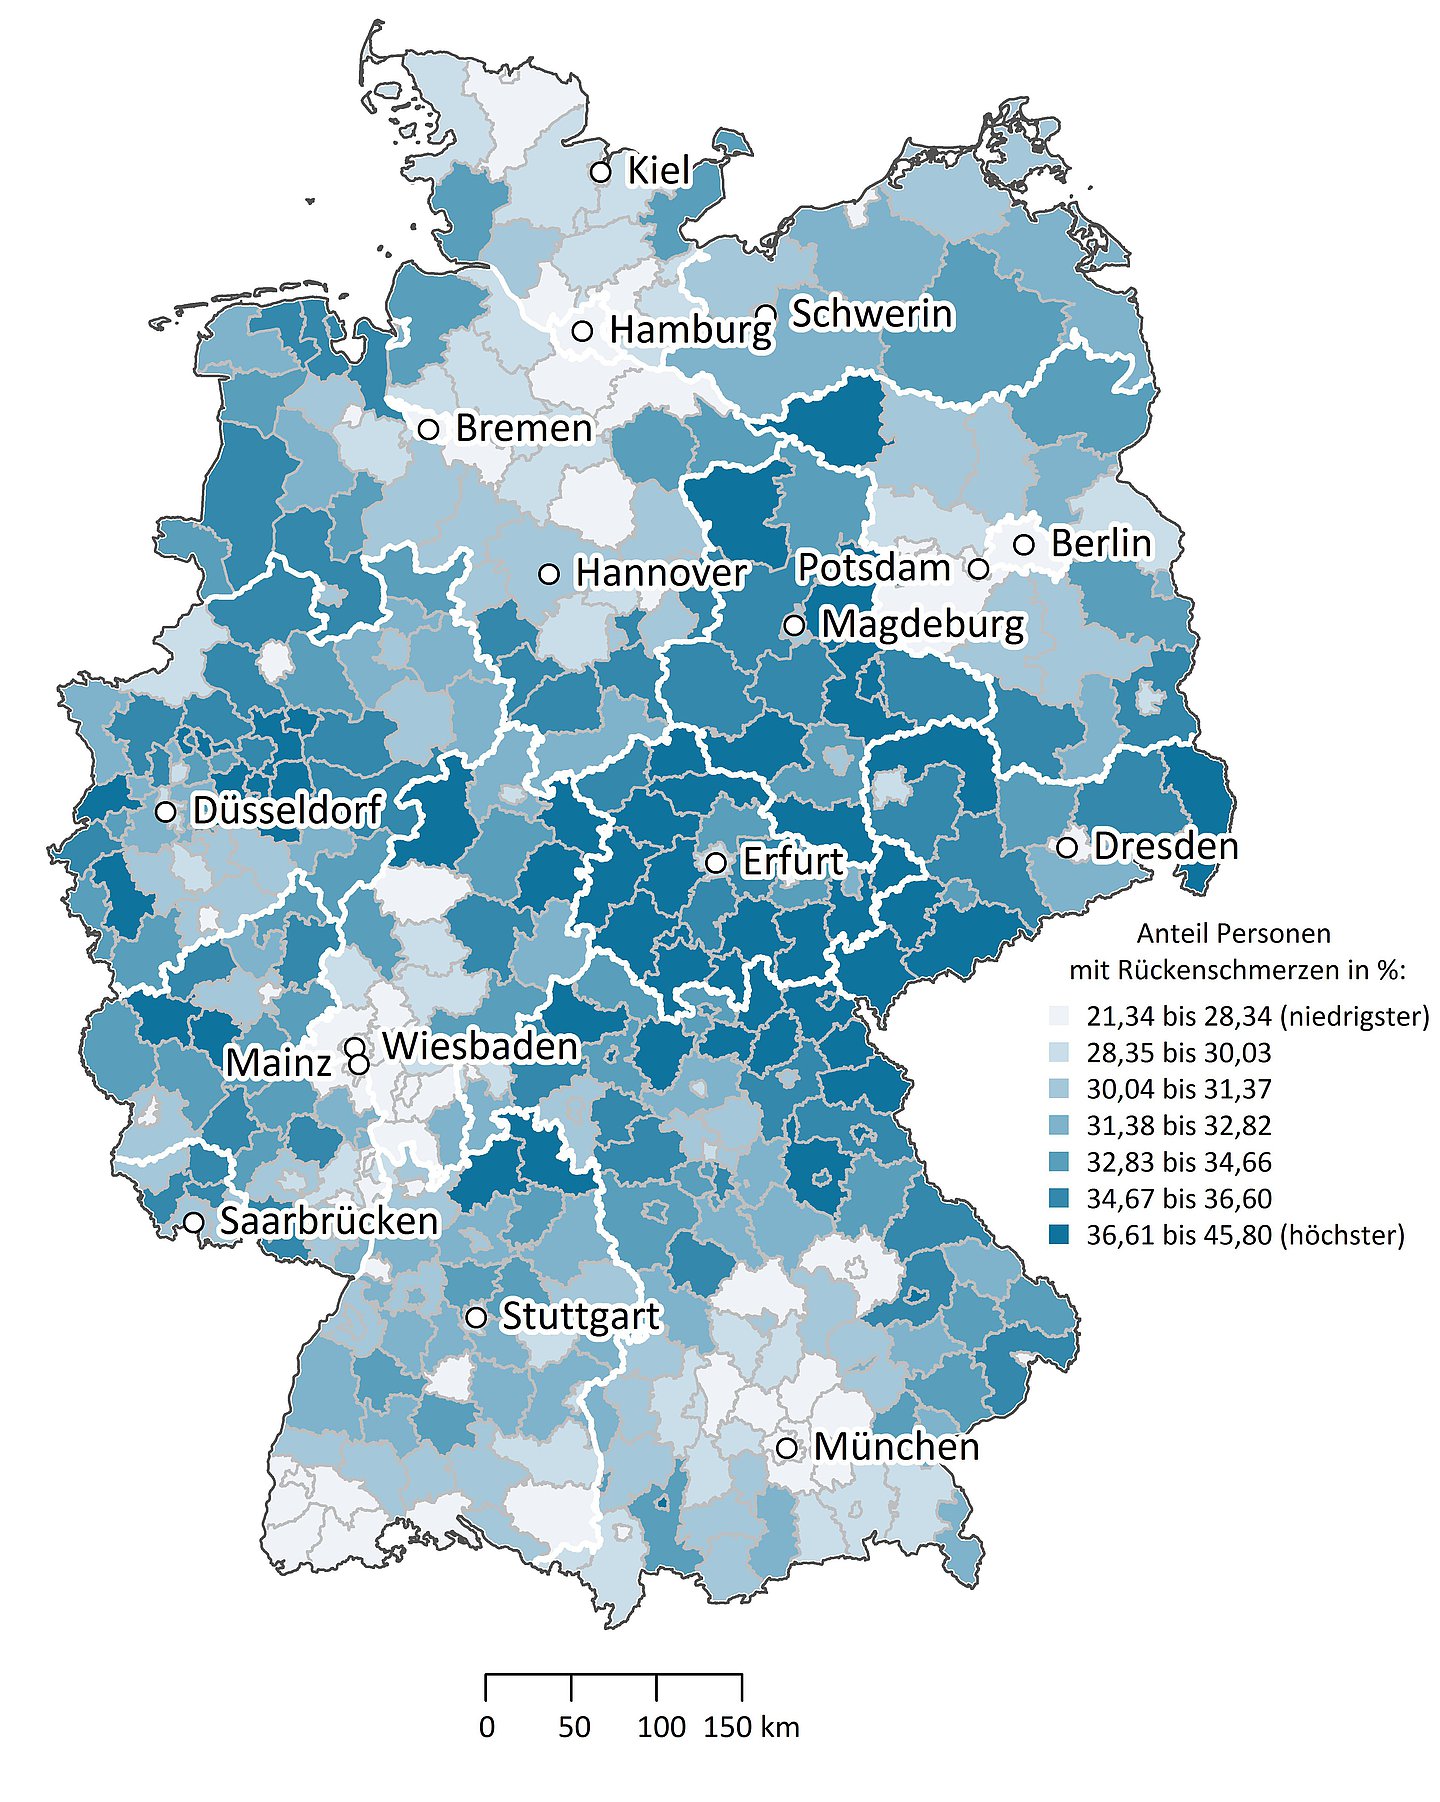 Deutschlandkarte: Rückenschmerzen in der deutschen Wohnbevölkerung: Vergleich der Regionen